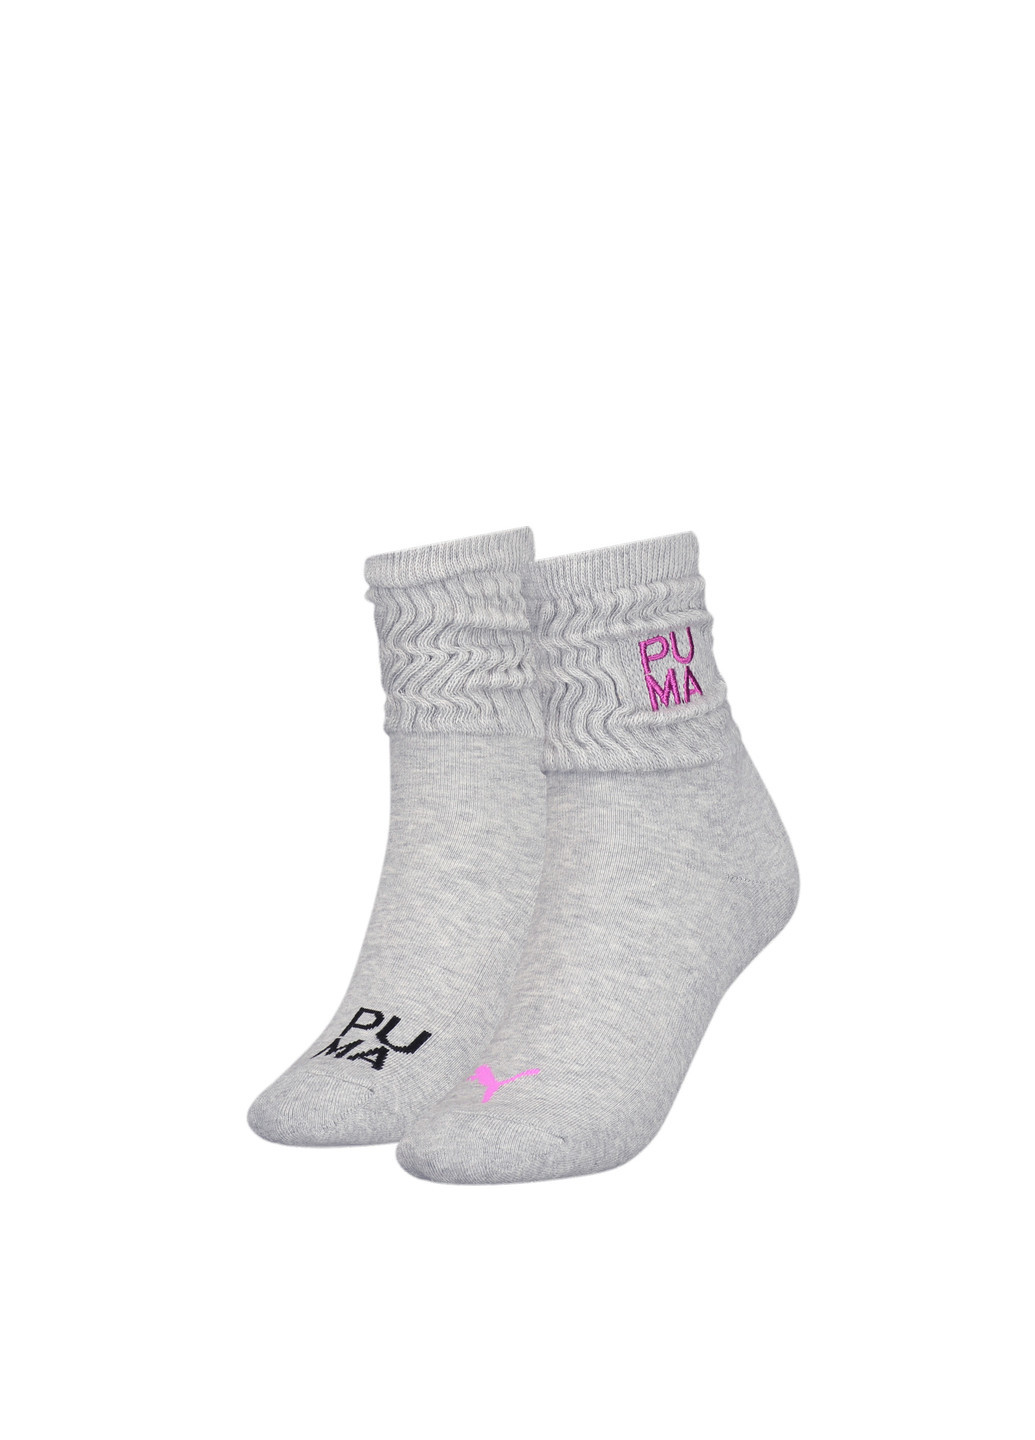 Носки Slouch Socks Women 2 Pack Puma однотонные серые спортивные